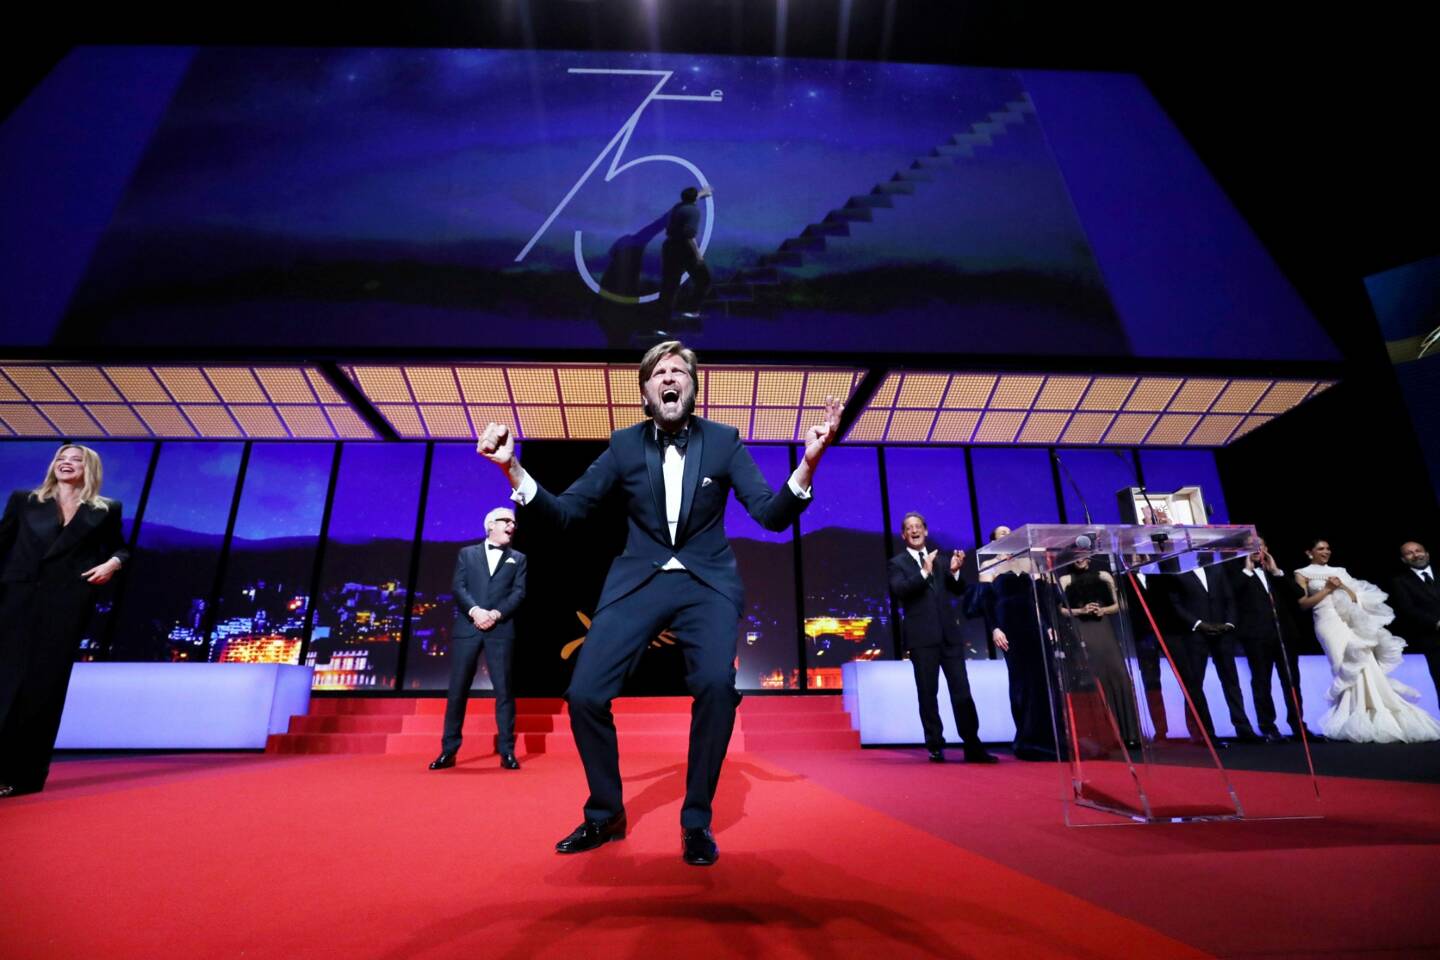 Le réalisateur suédois Ruben Östlund a décroché la Palme d'or du 75e Festival de Cannes pour son film "Triangle of Sadness", samedi 28 mai.